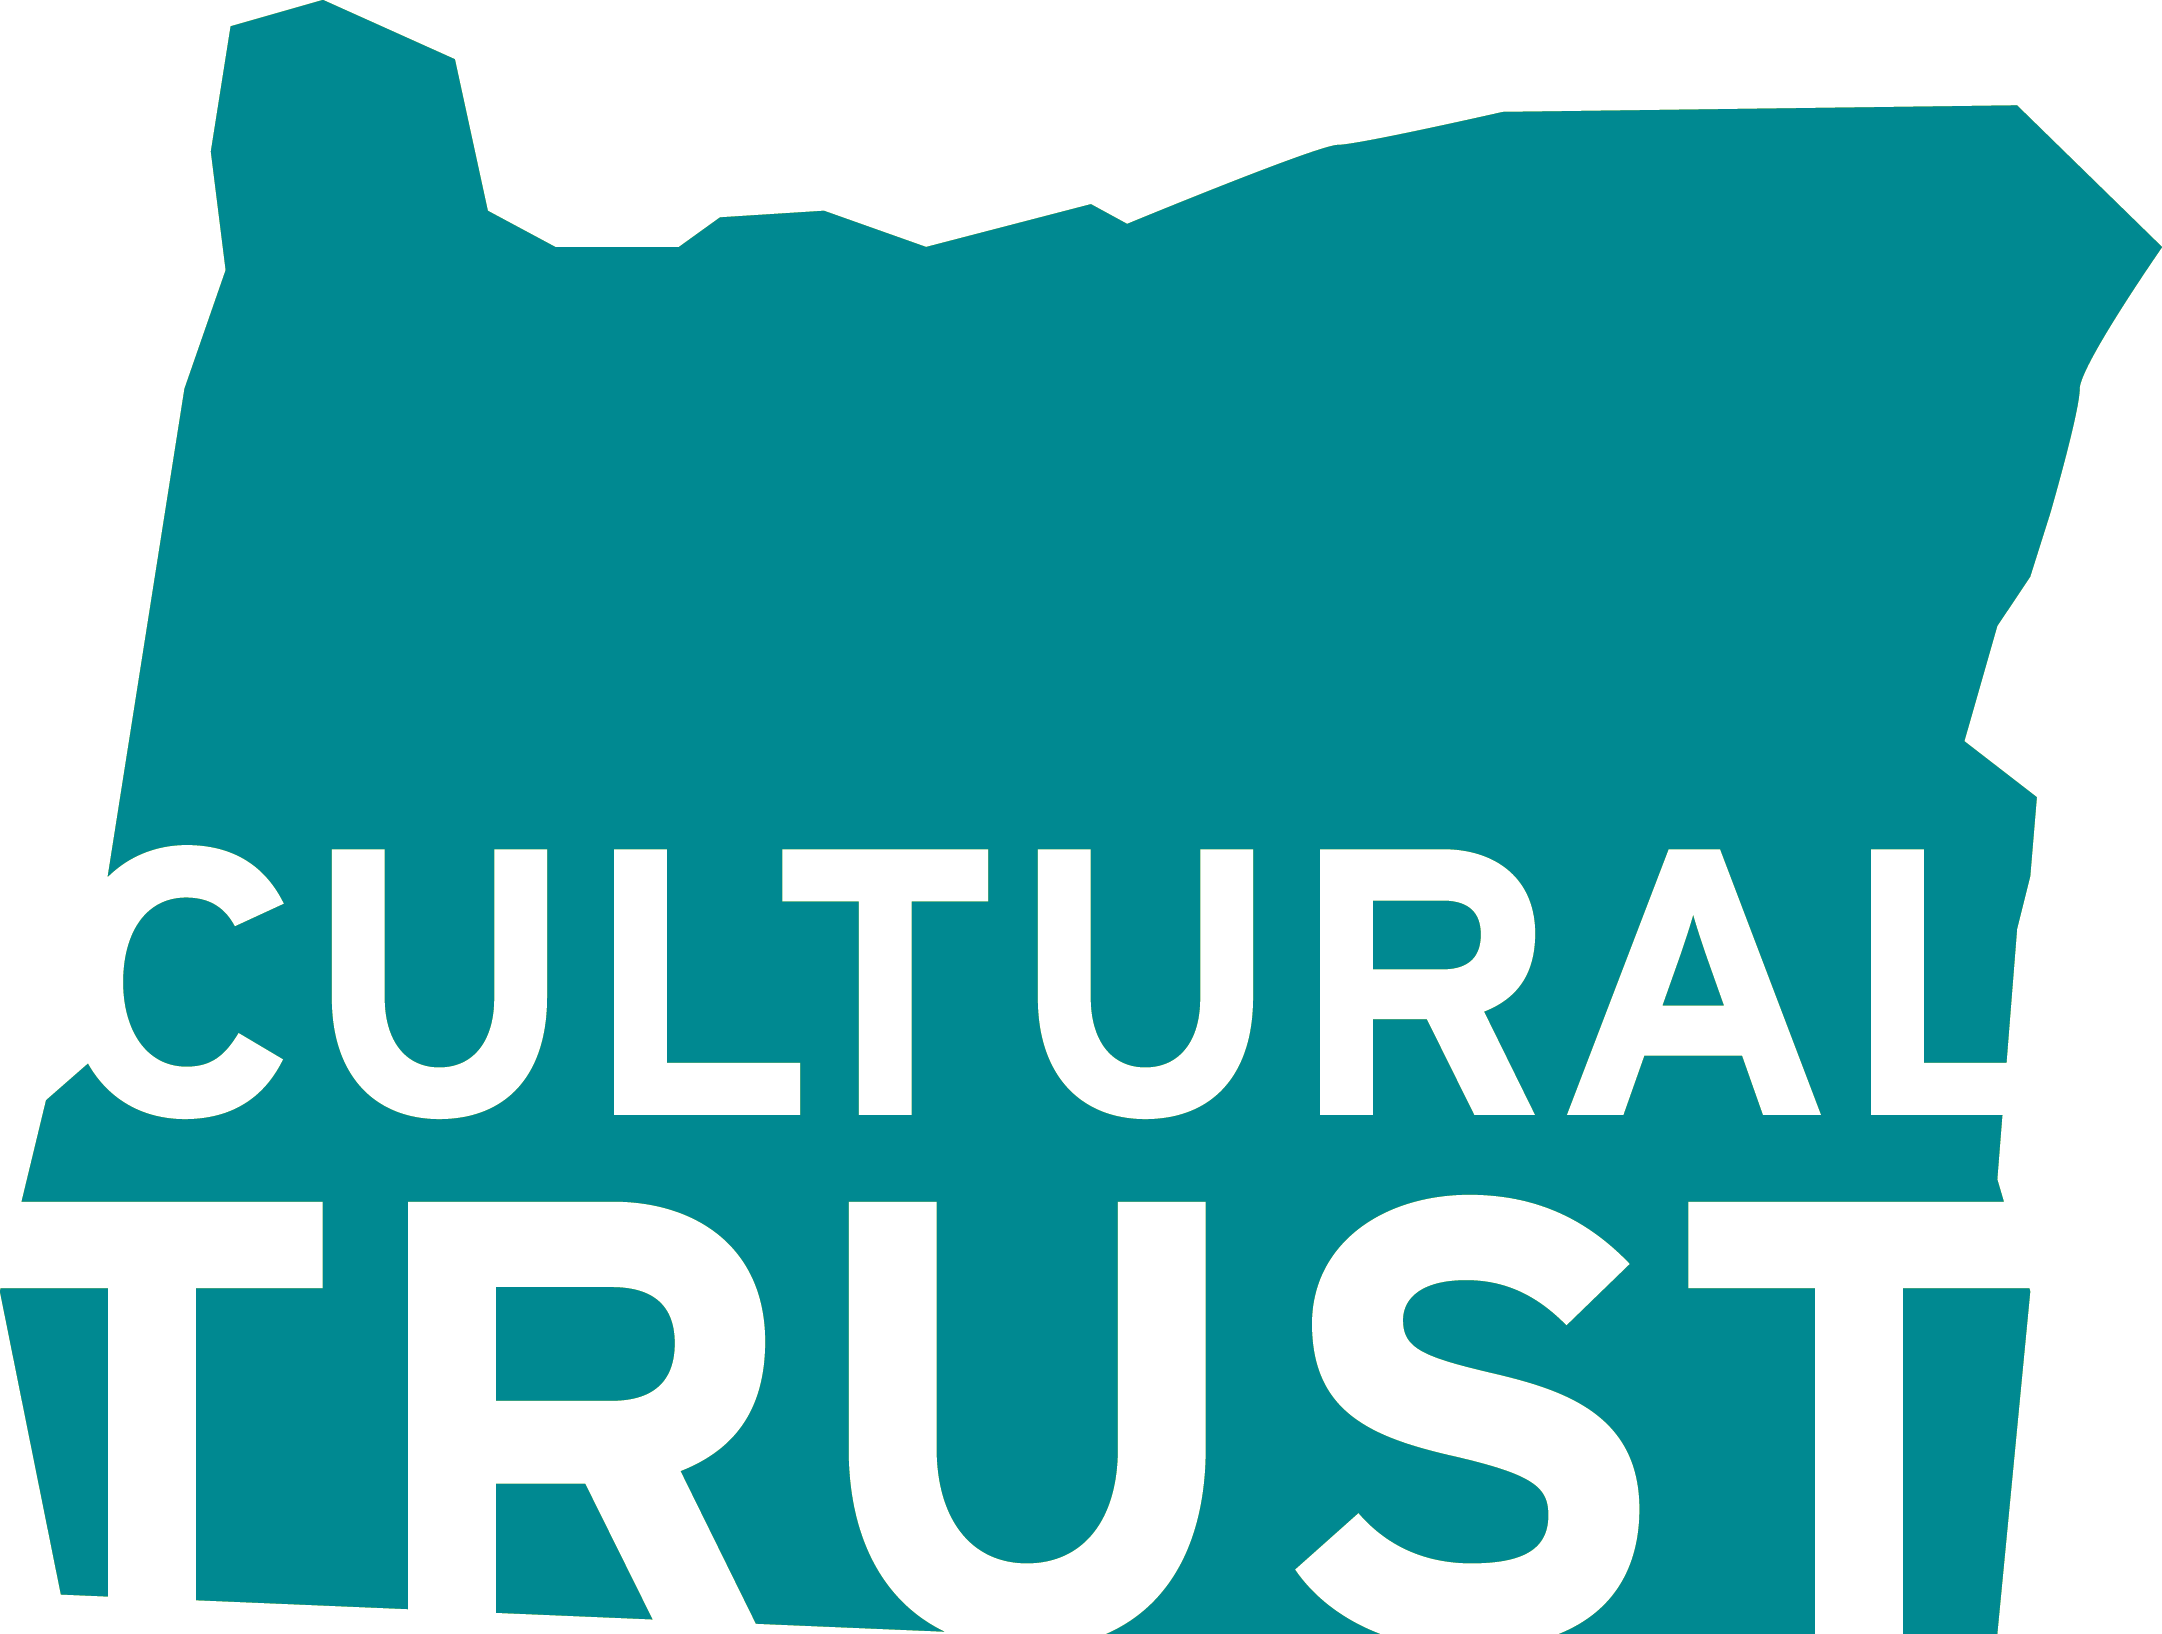 Oregon Cultural Trust teal logo